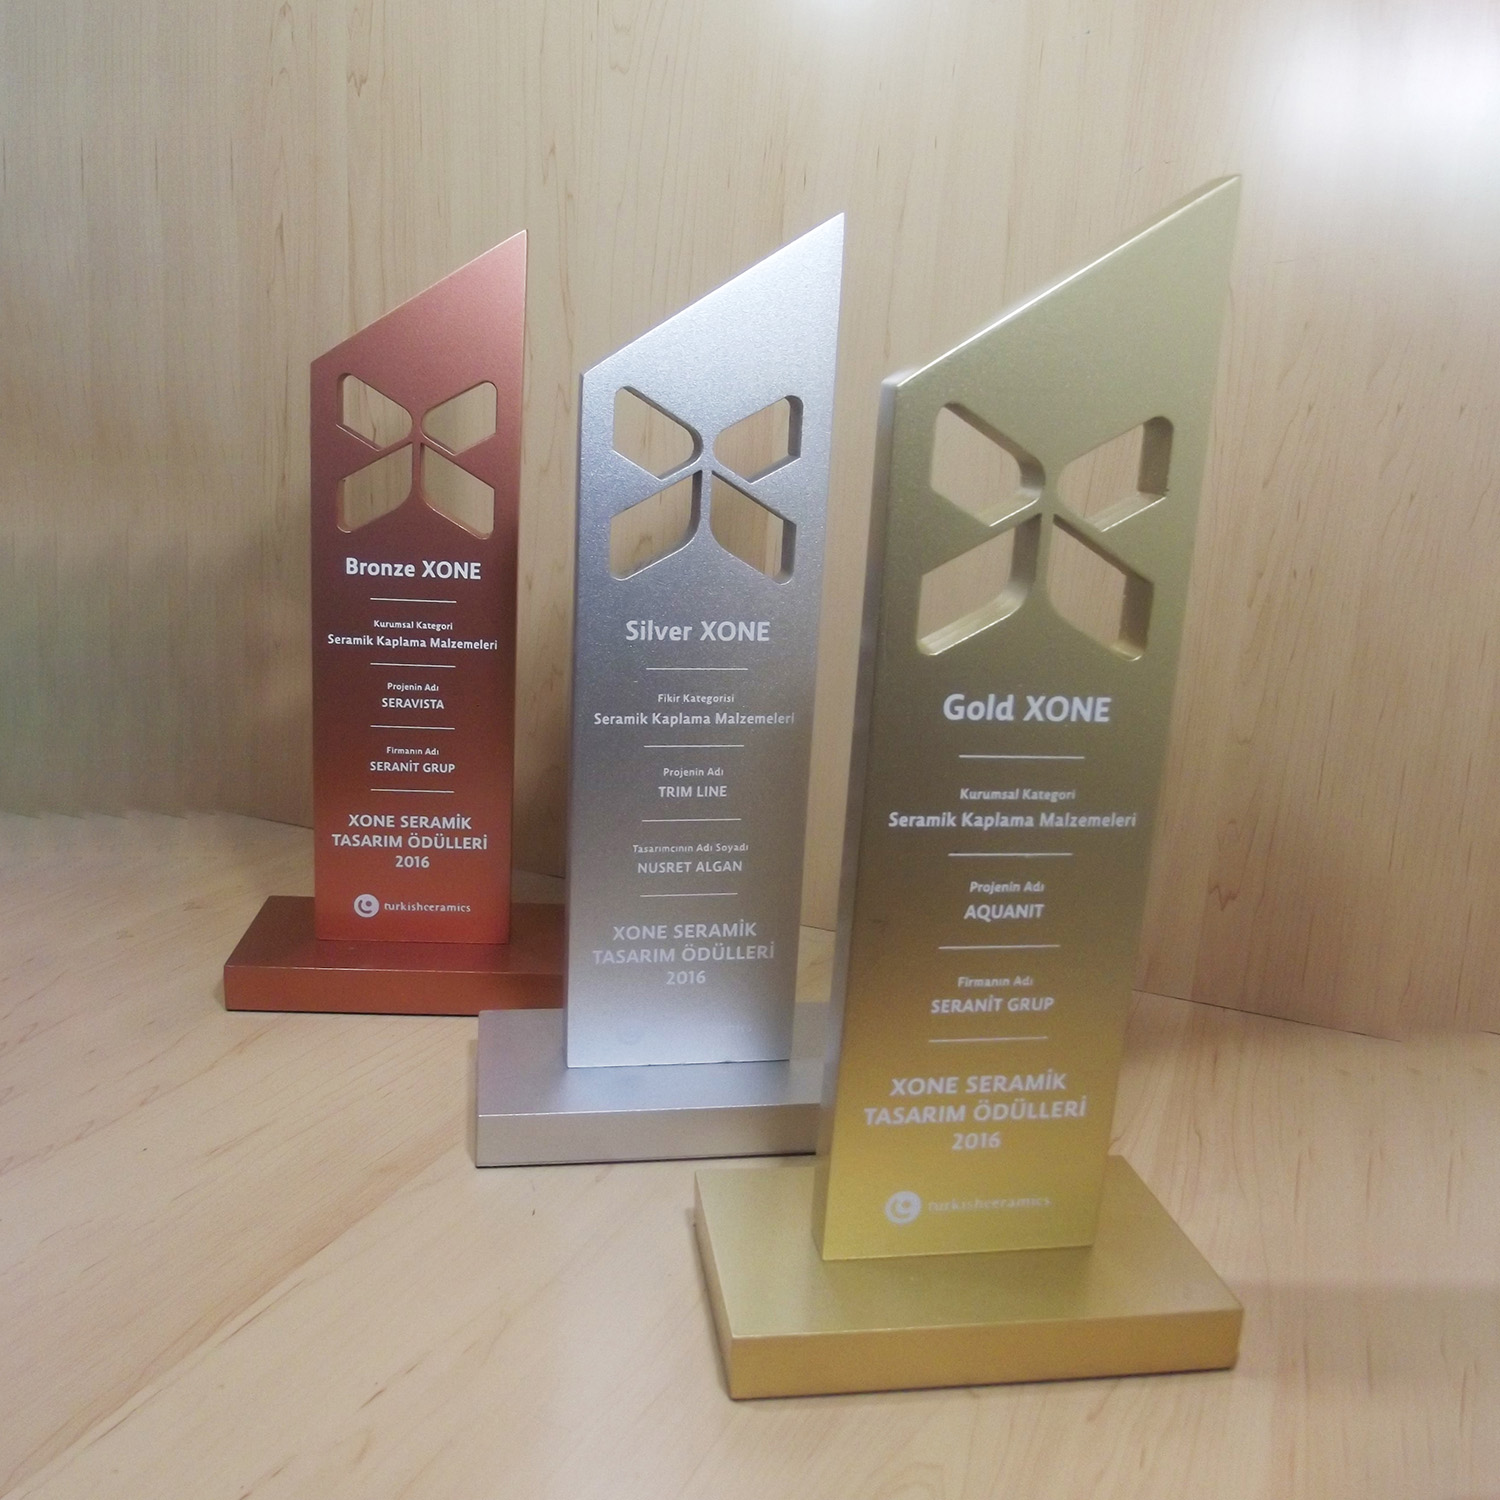 XONE Seramik Tasarım Ödülleri